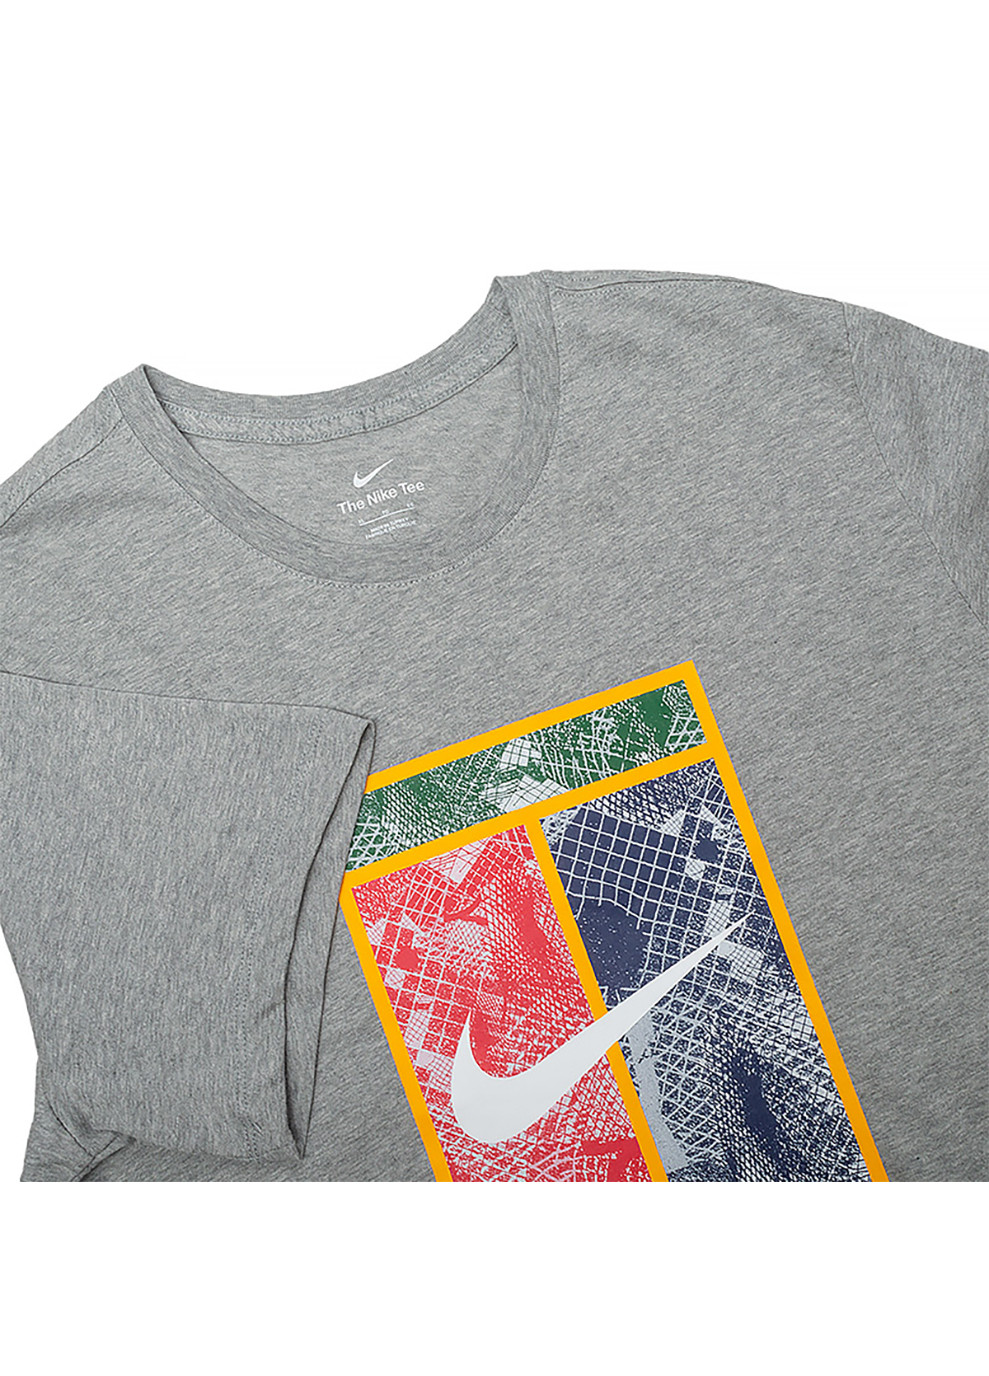 Серая мужская футболка m nkct tee heritage серый s (dz2637-063 s) Nike